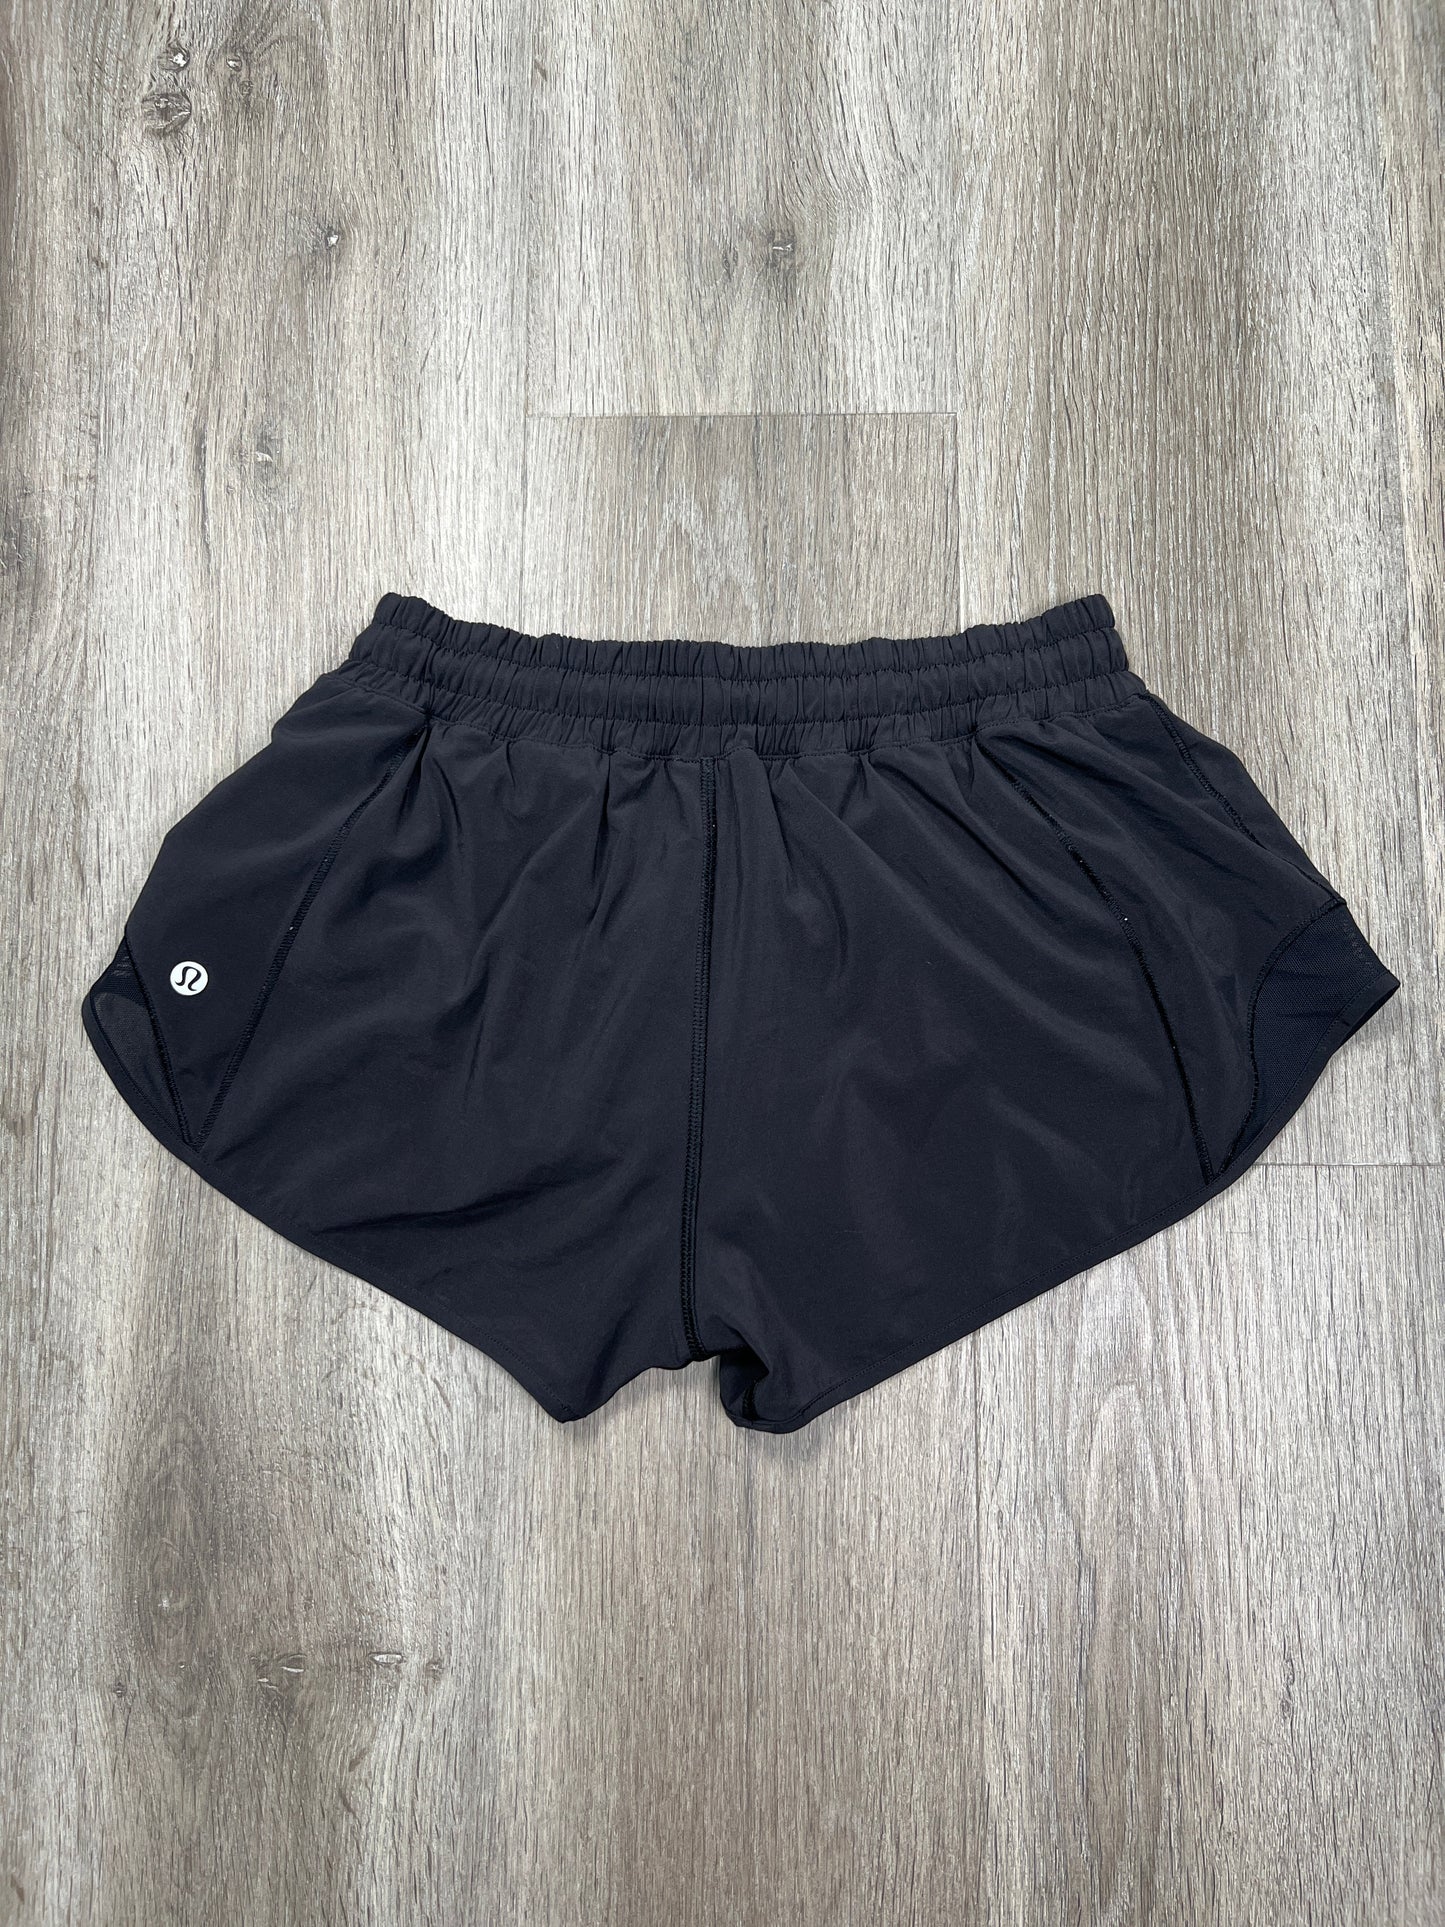 Black Athletic Shorts Lululemon, Size S